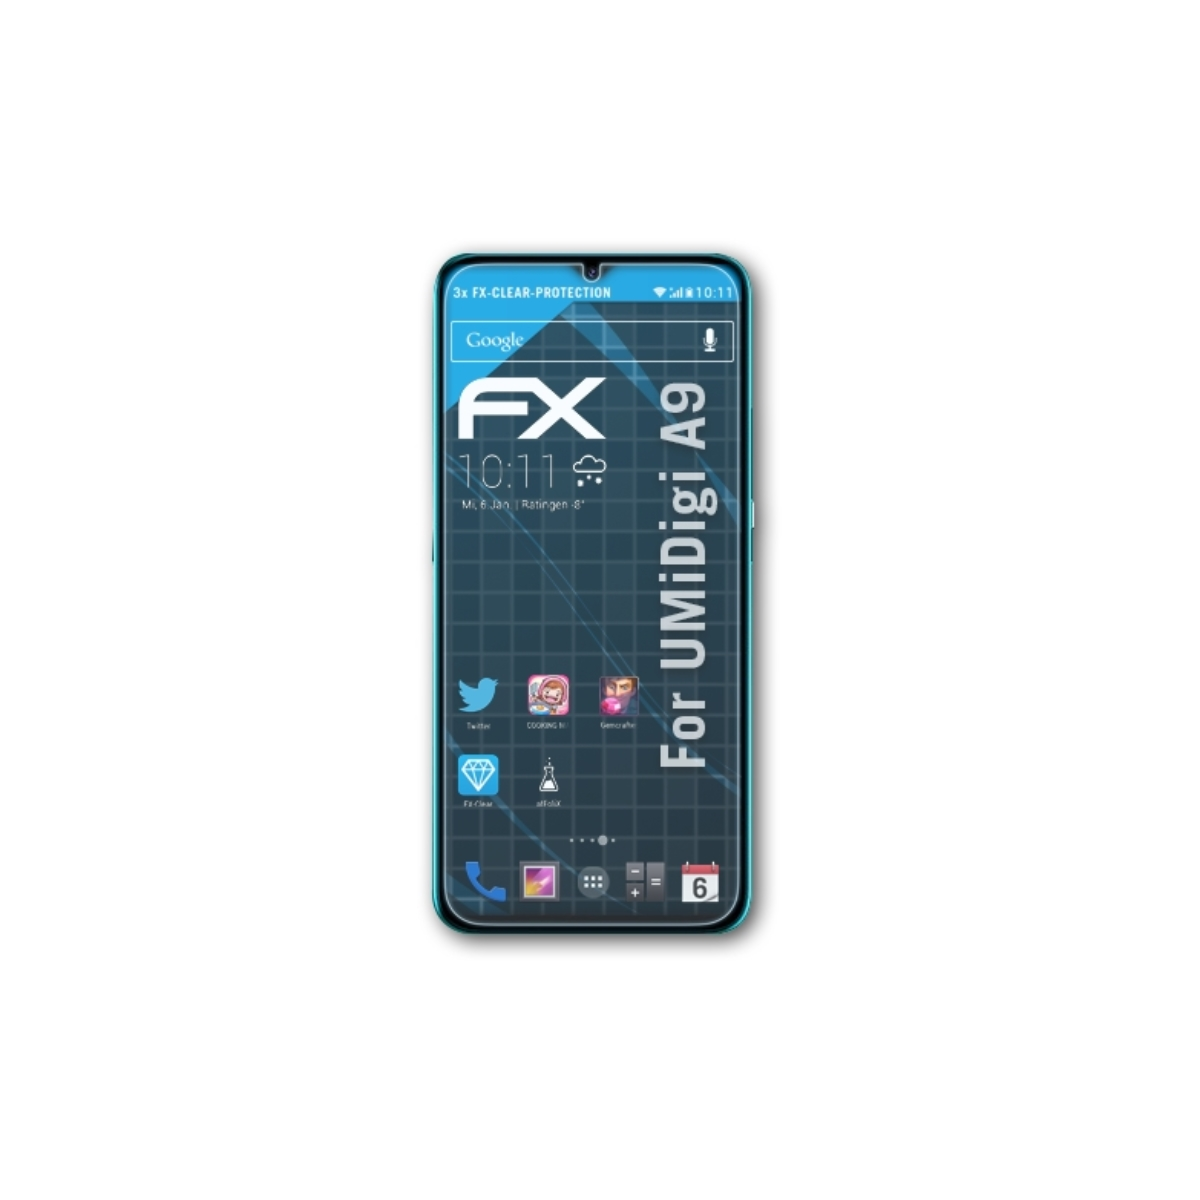 A9) 3x FX-Clear Displayschutz(für UMiDigi ATFOLIX